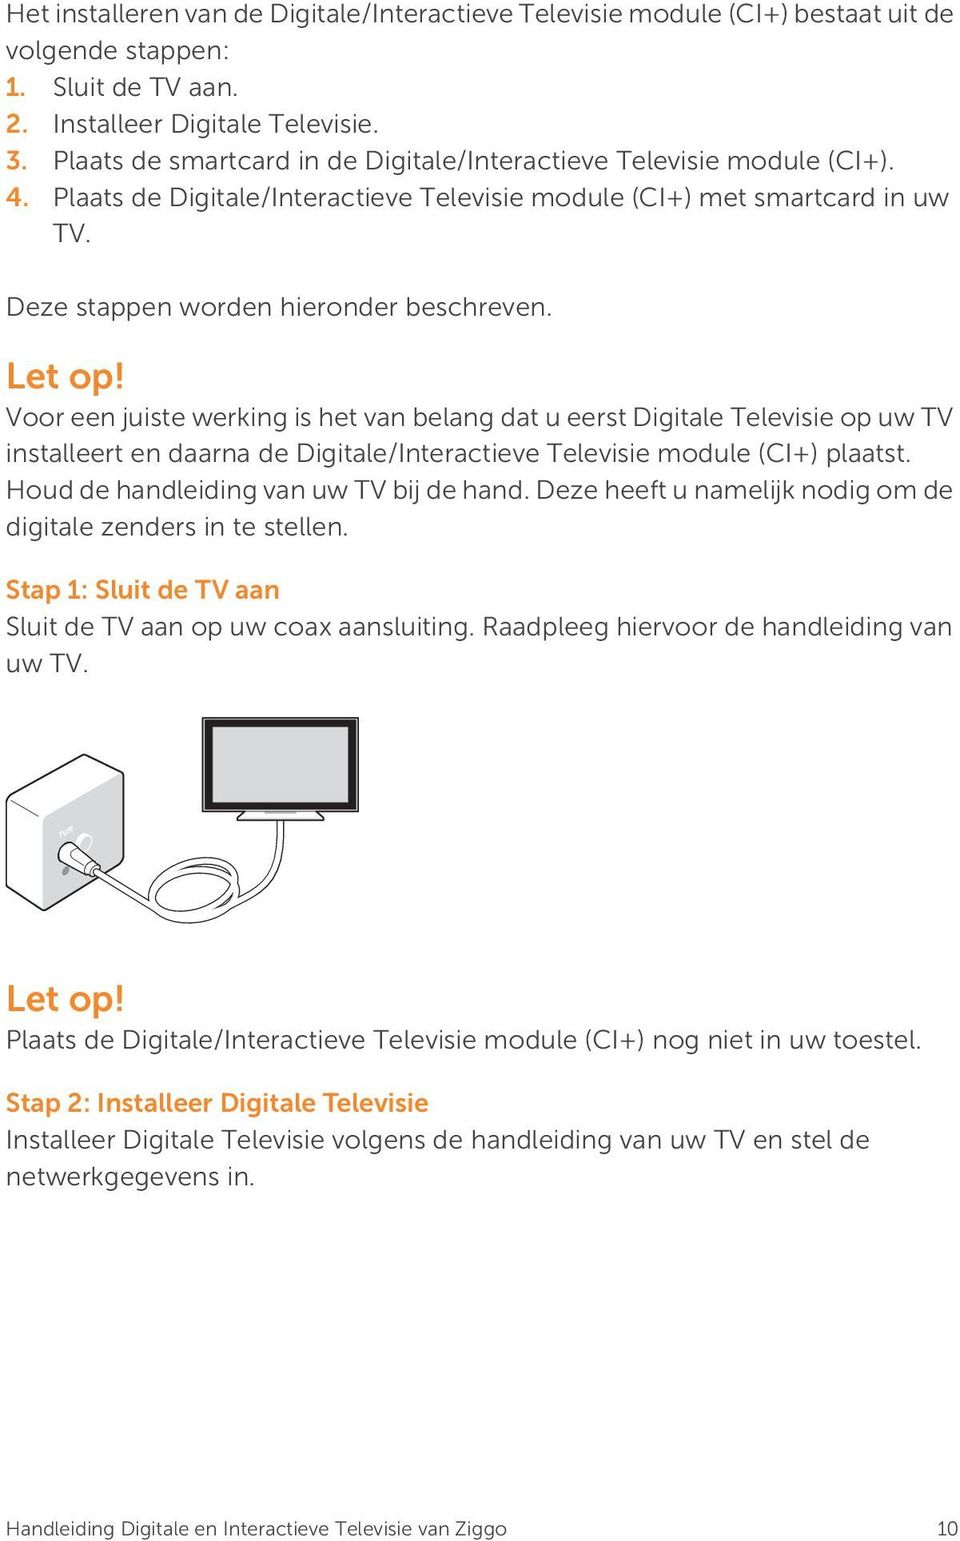 Let op! Voor een juiste werking is het van belang dat u eerst Digitale Televisie op uw TV installeert en daarna de Digitale/Interactieve Televisie module (CI+) plaatst.